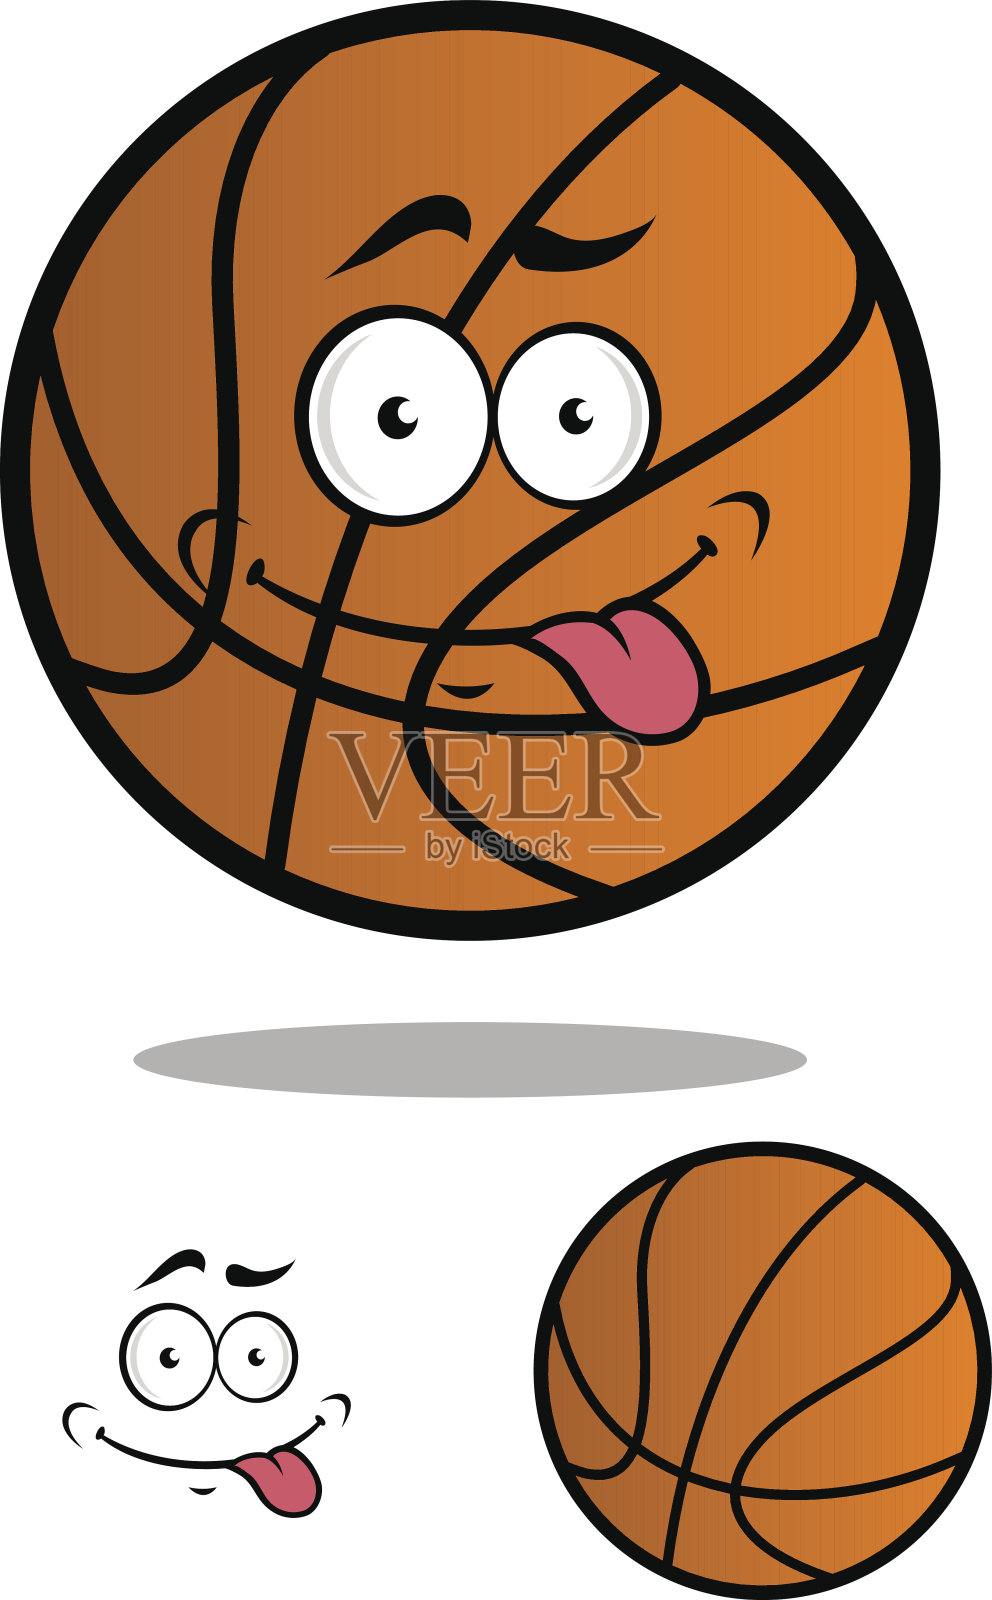 有趣的卡通篮球插画图片素材